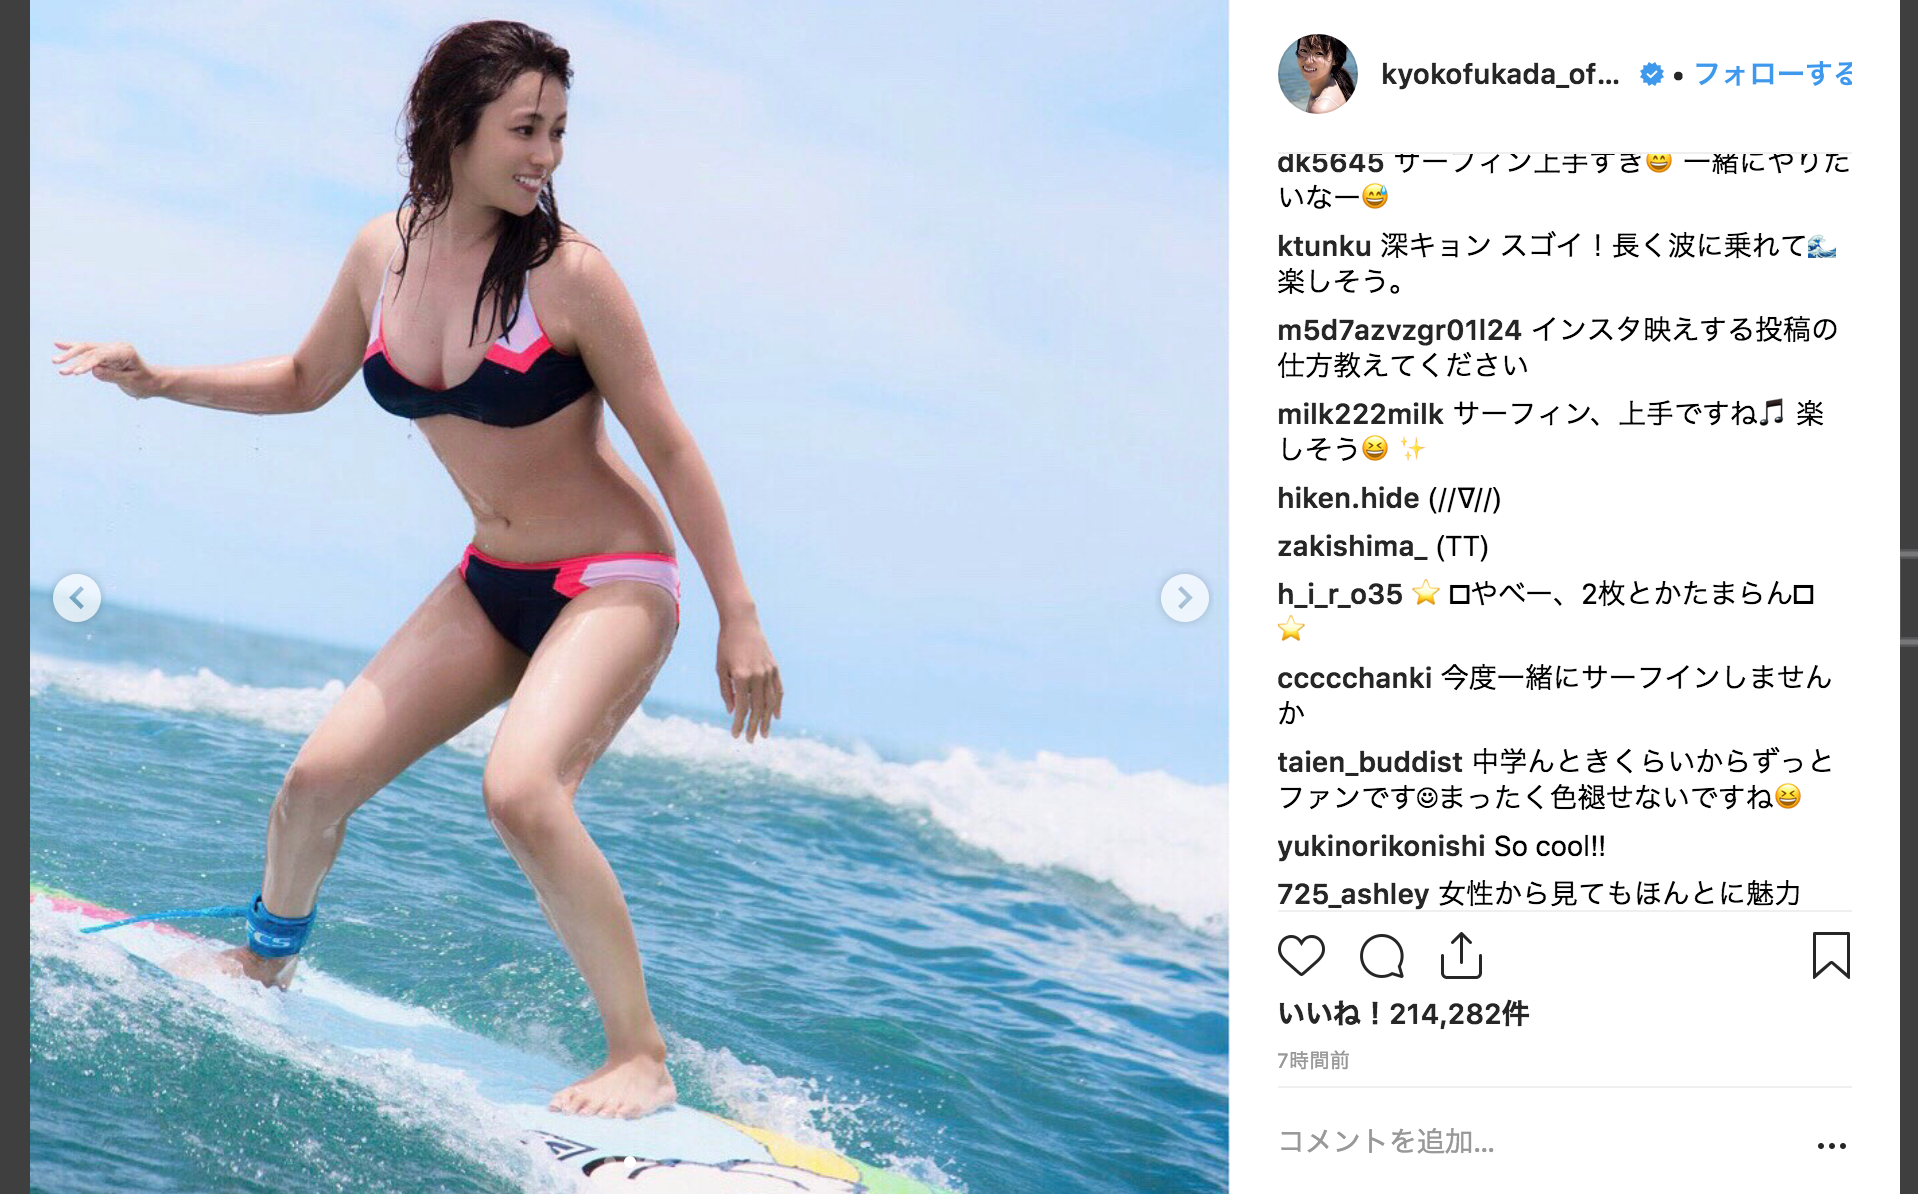 深田恭子のサーフィンの実力がハンパないと話題に 秒刊sunday